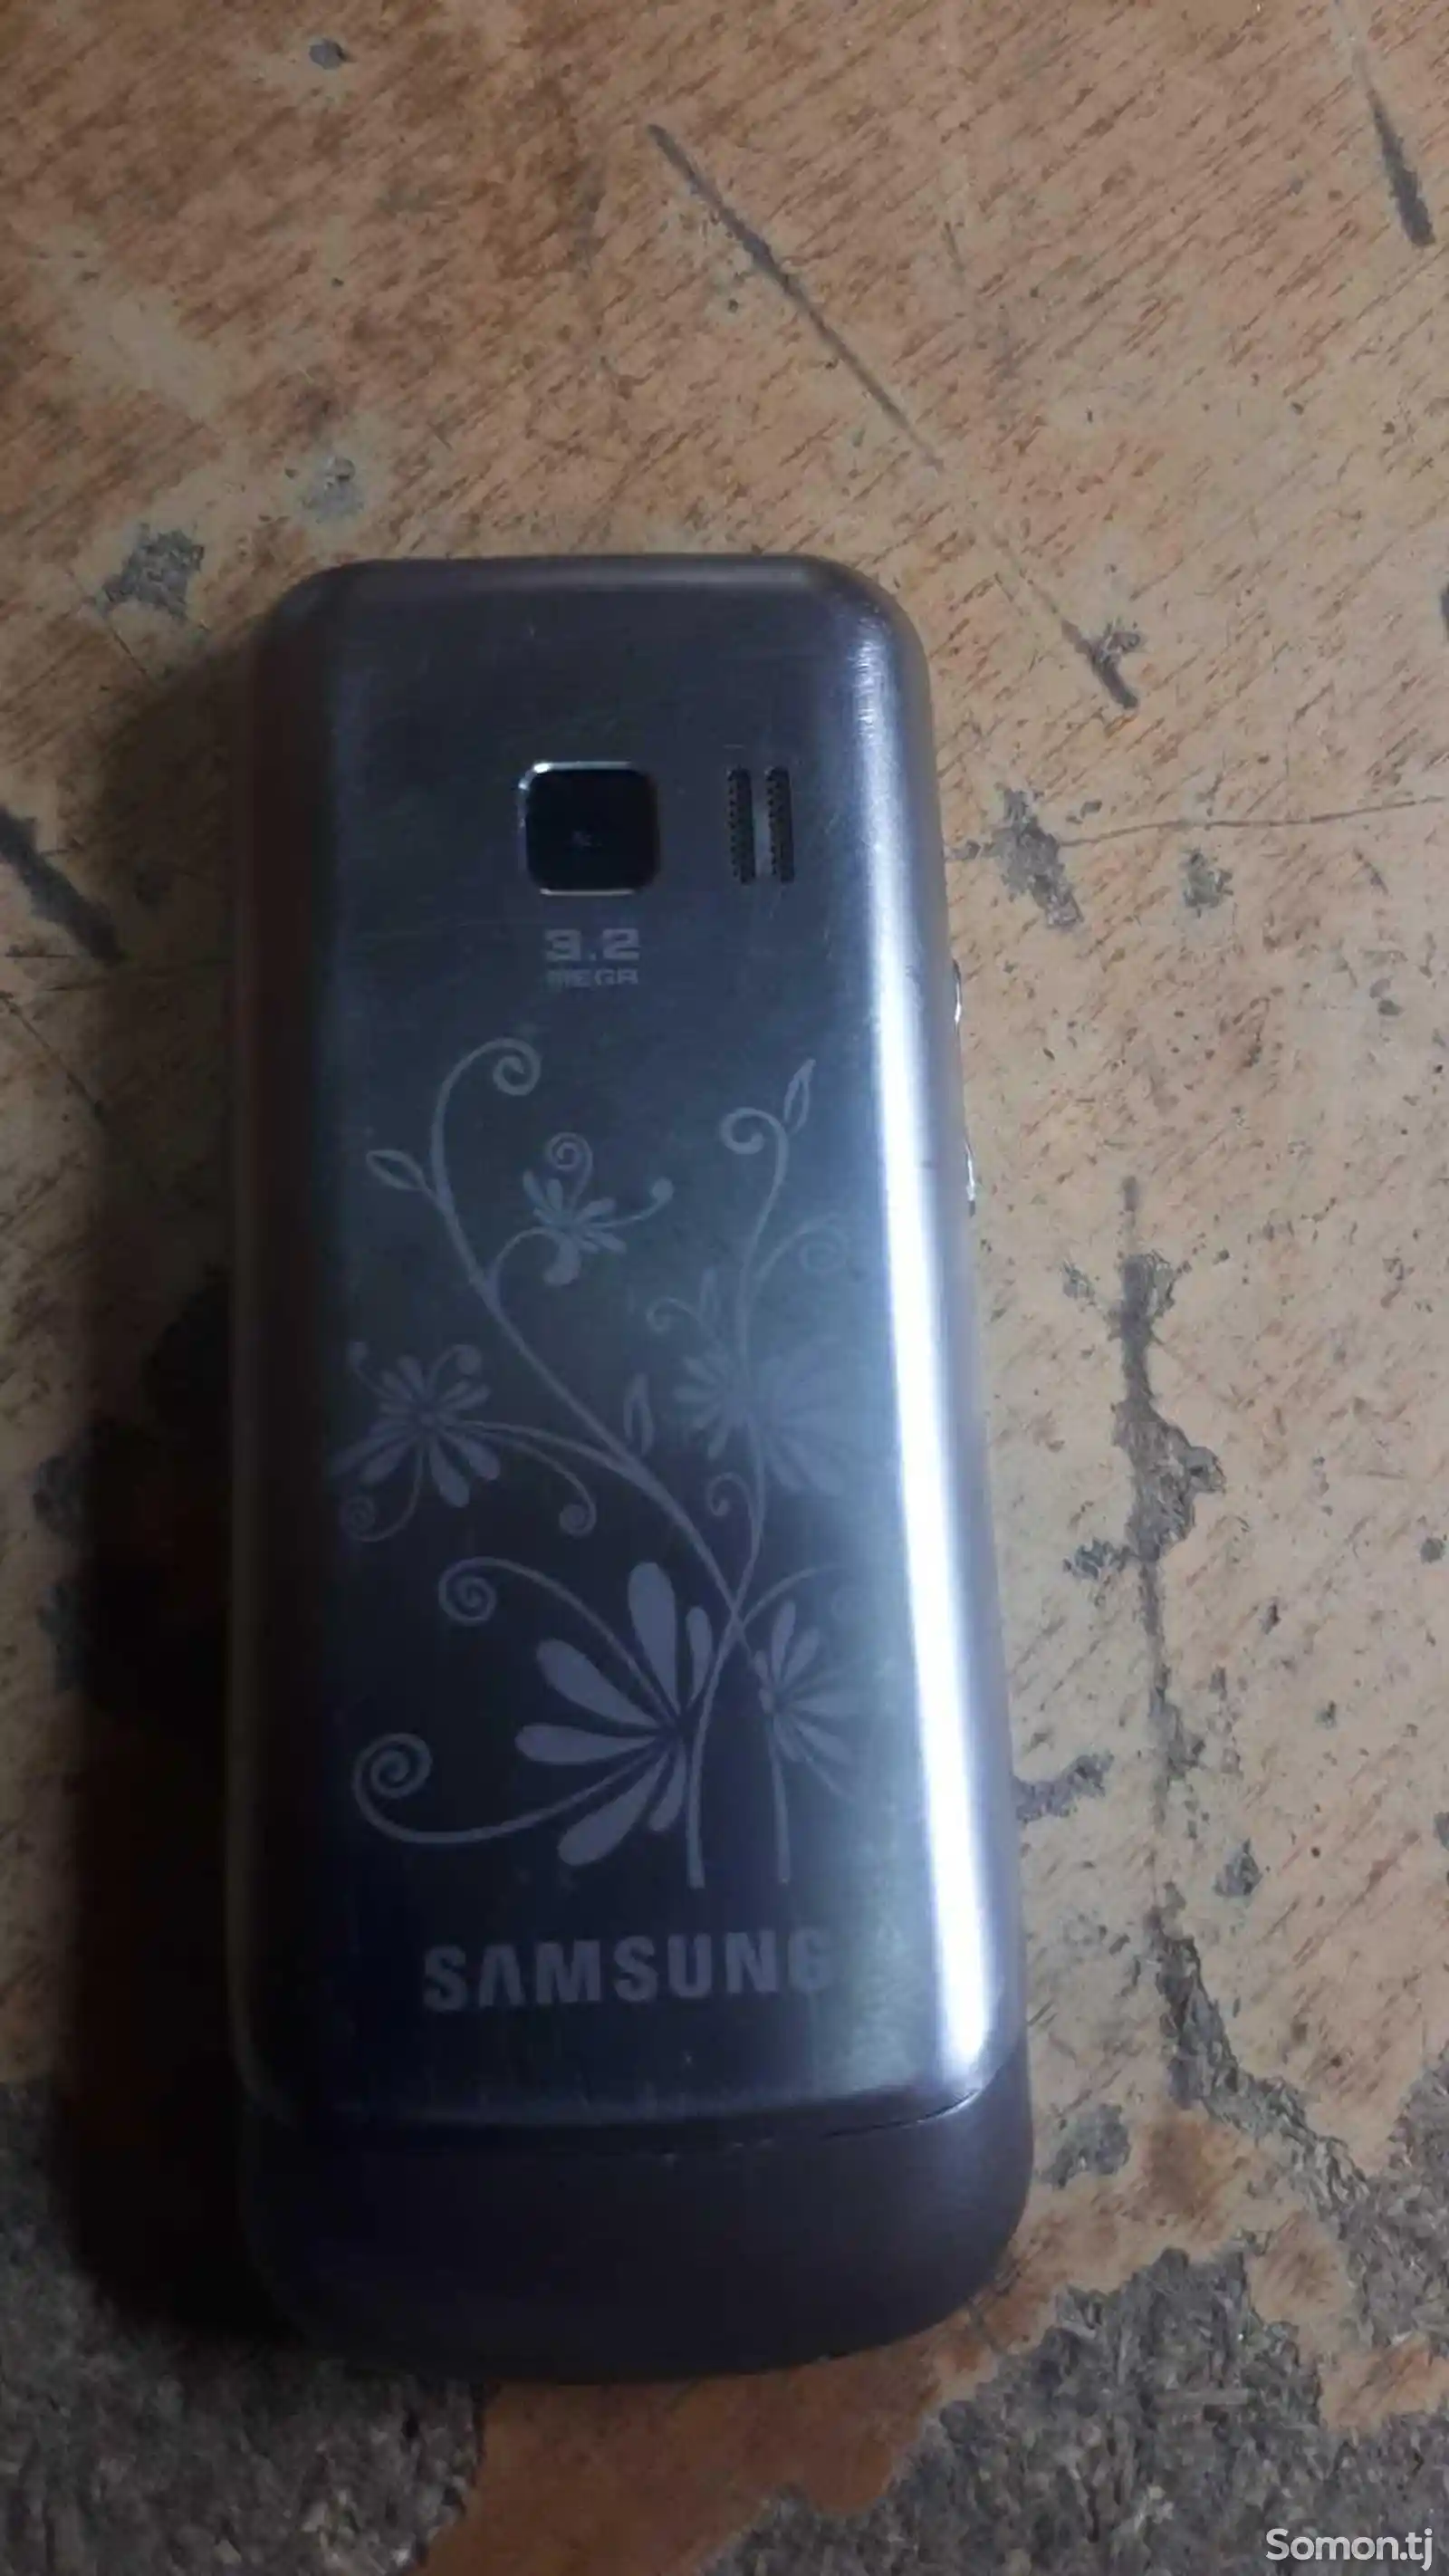 Samsung GT-C3530-2